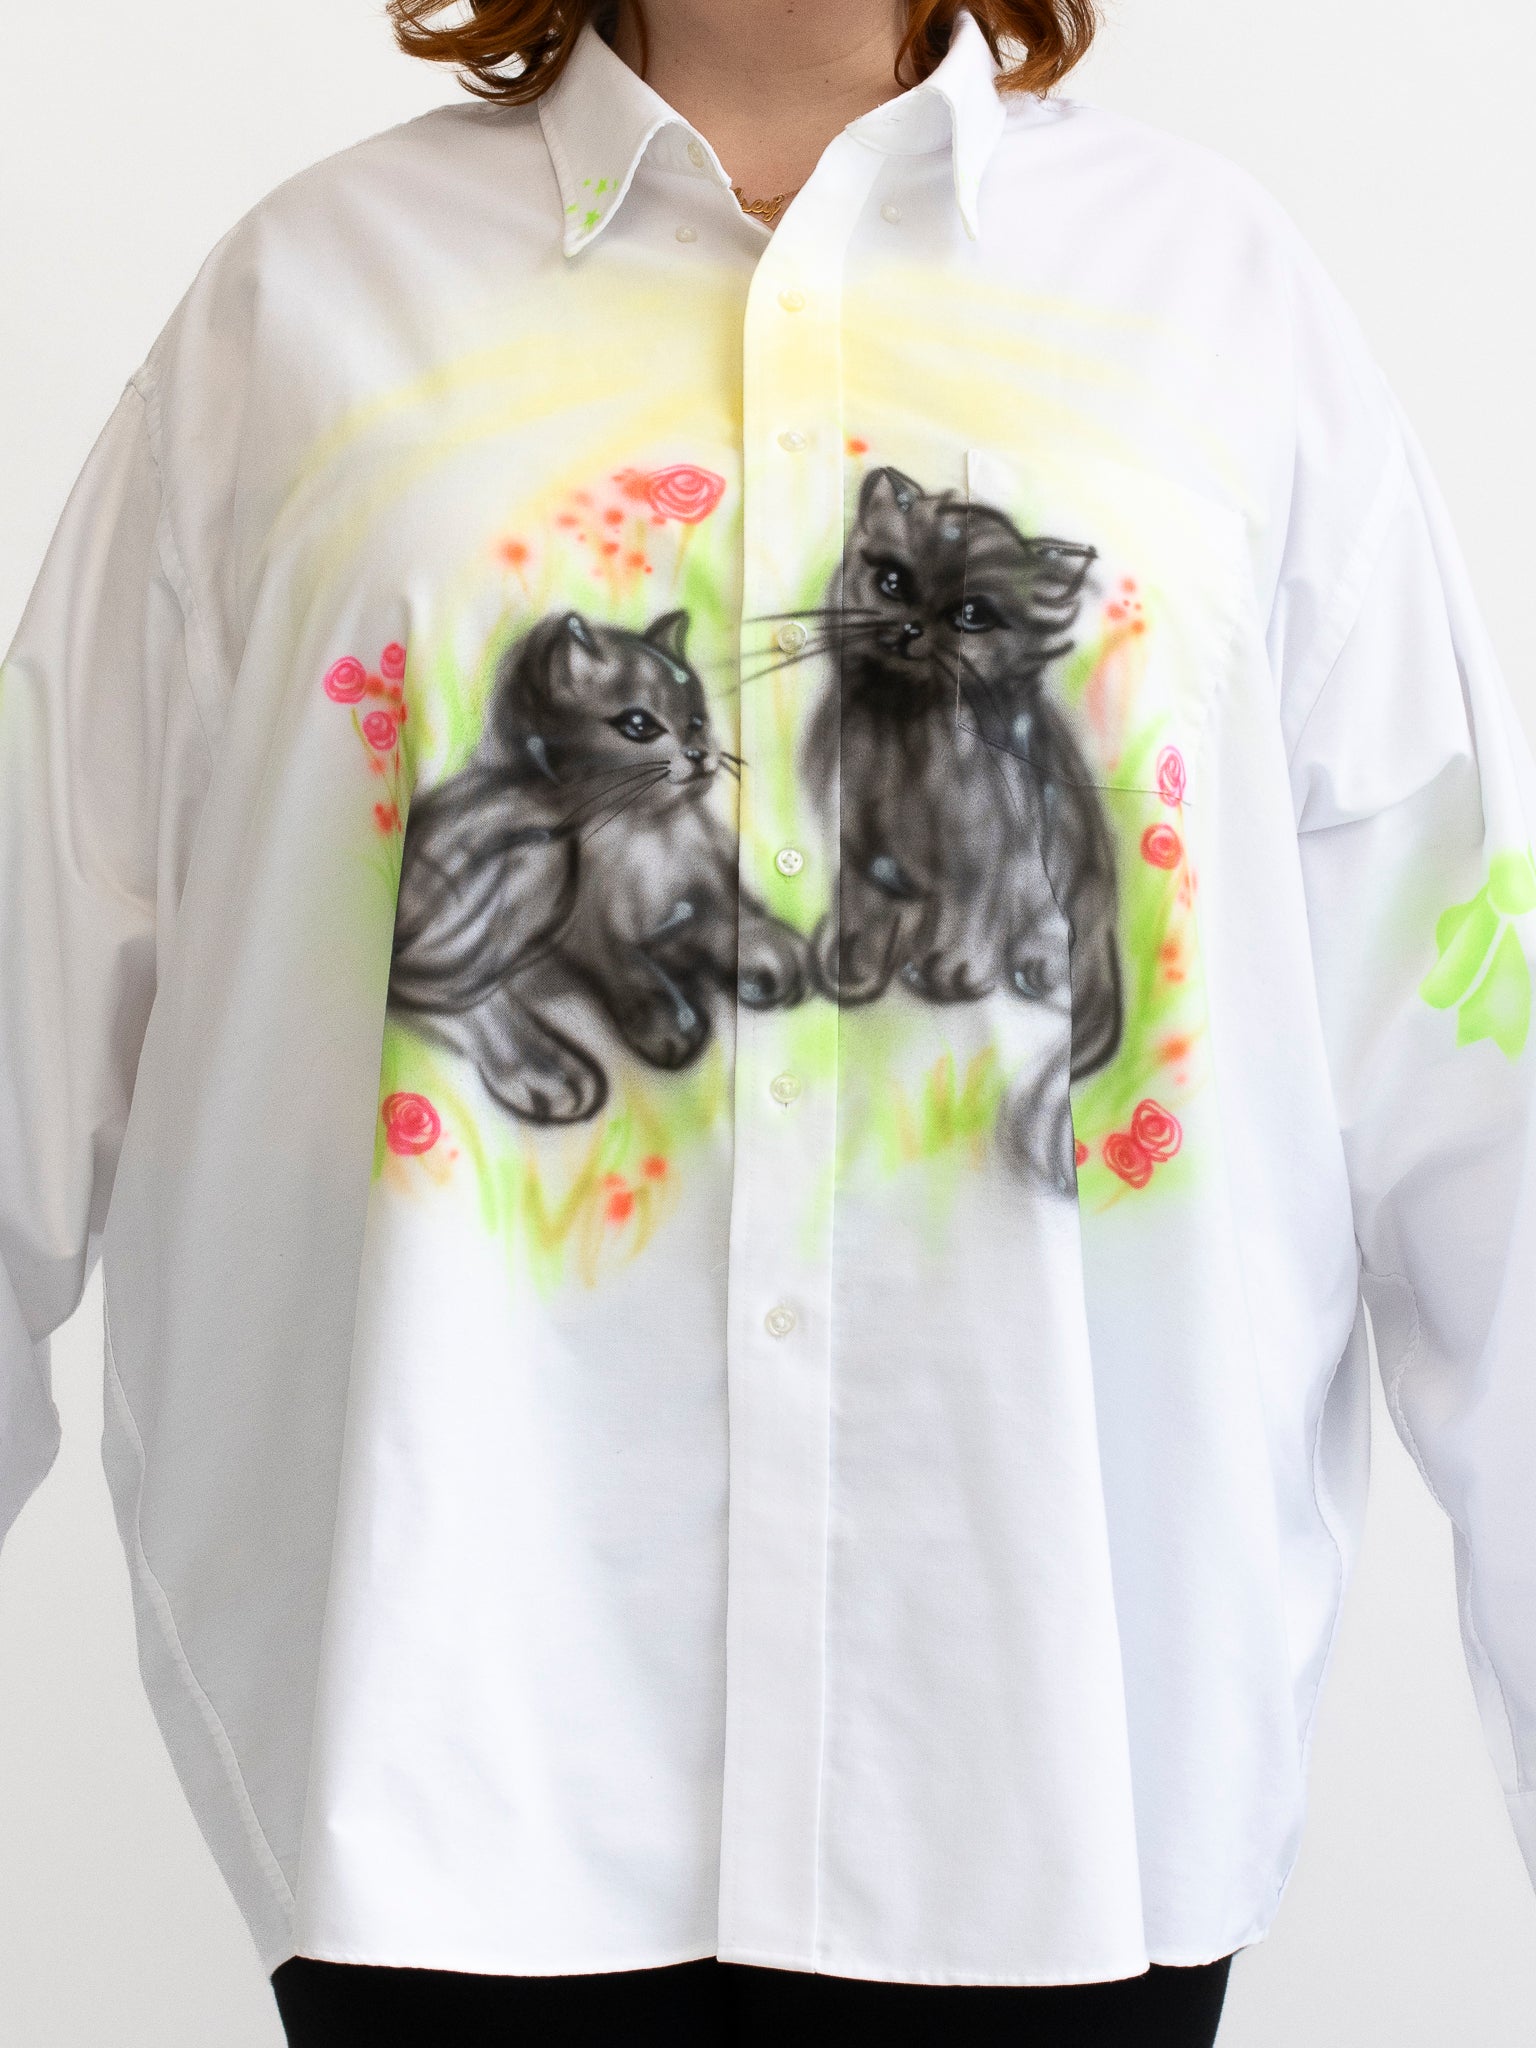 Femlord x BRZ - Kittens Shirt (4X)